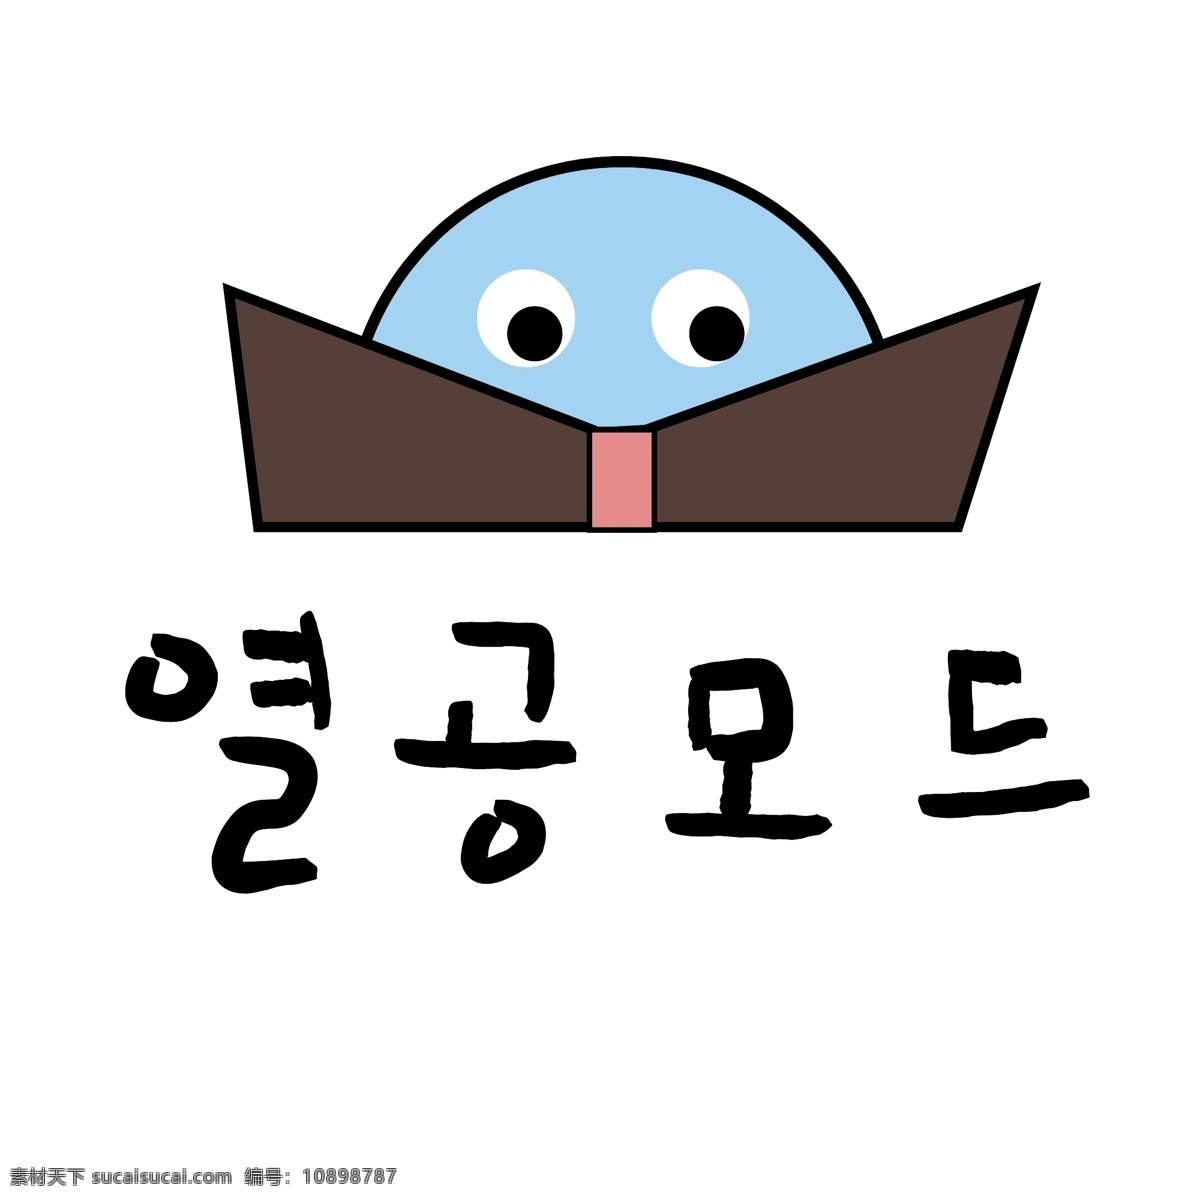 书籍 热 读 韩国 商用 语言 征集 肝药 褐色 对话 漫画 小的 向量 热征集 热毒 日常用语 书 卡通 蓝色